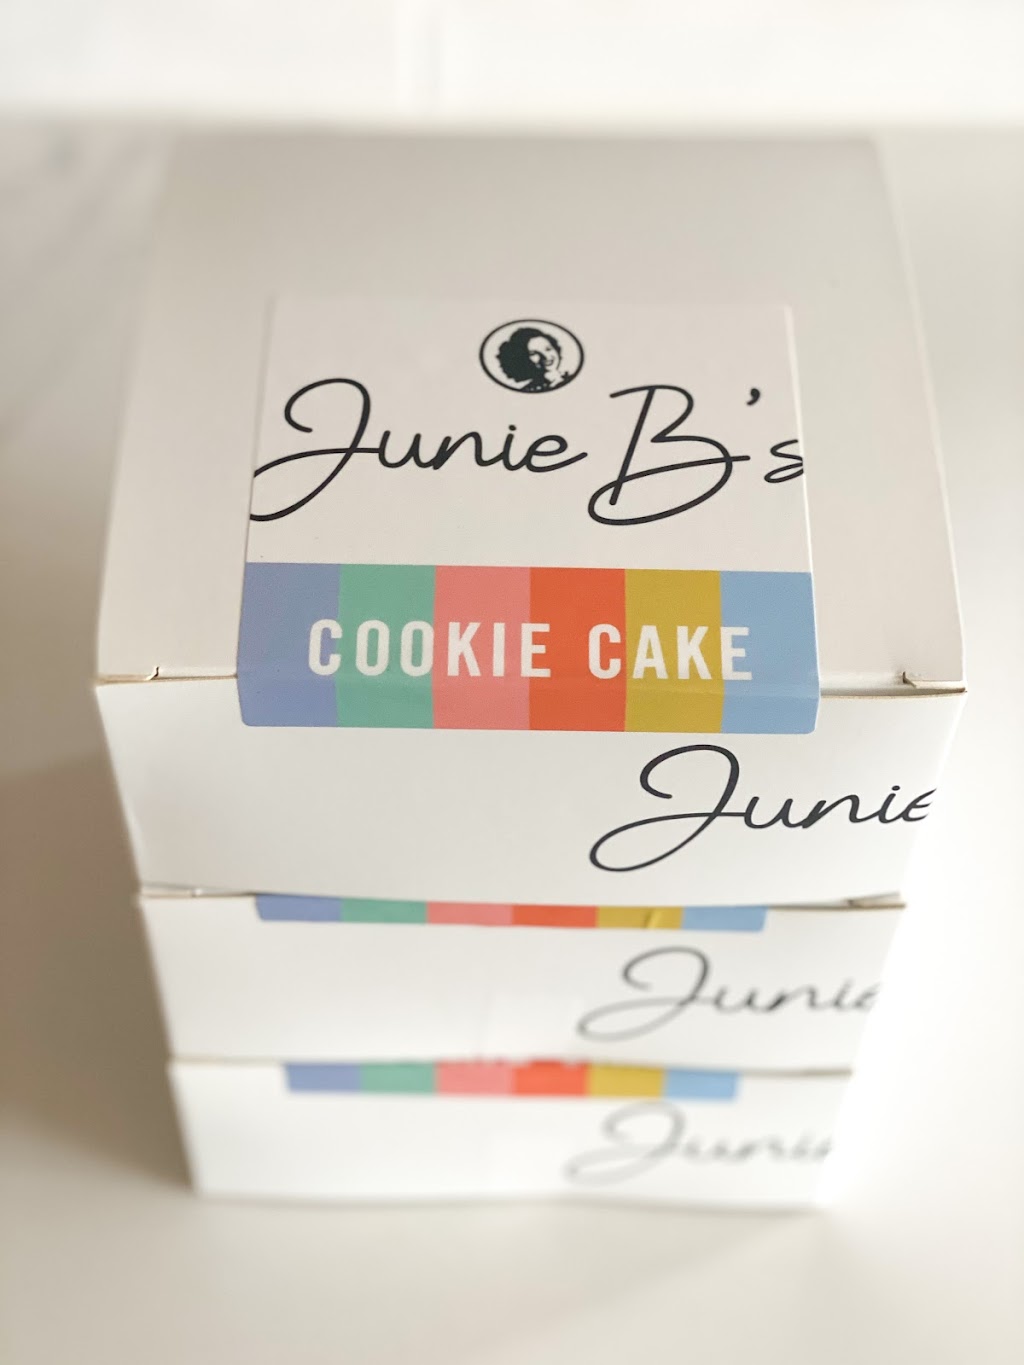 Junie Bs Bake Shop | 3108 Glenn Rd, Durham, NC 27704 | Phone: (919) 521-3418